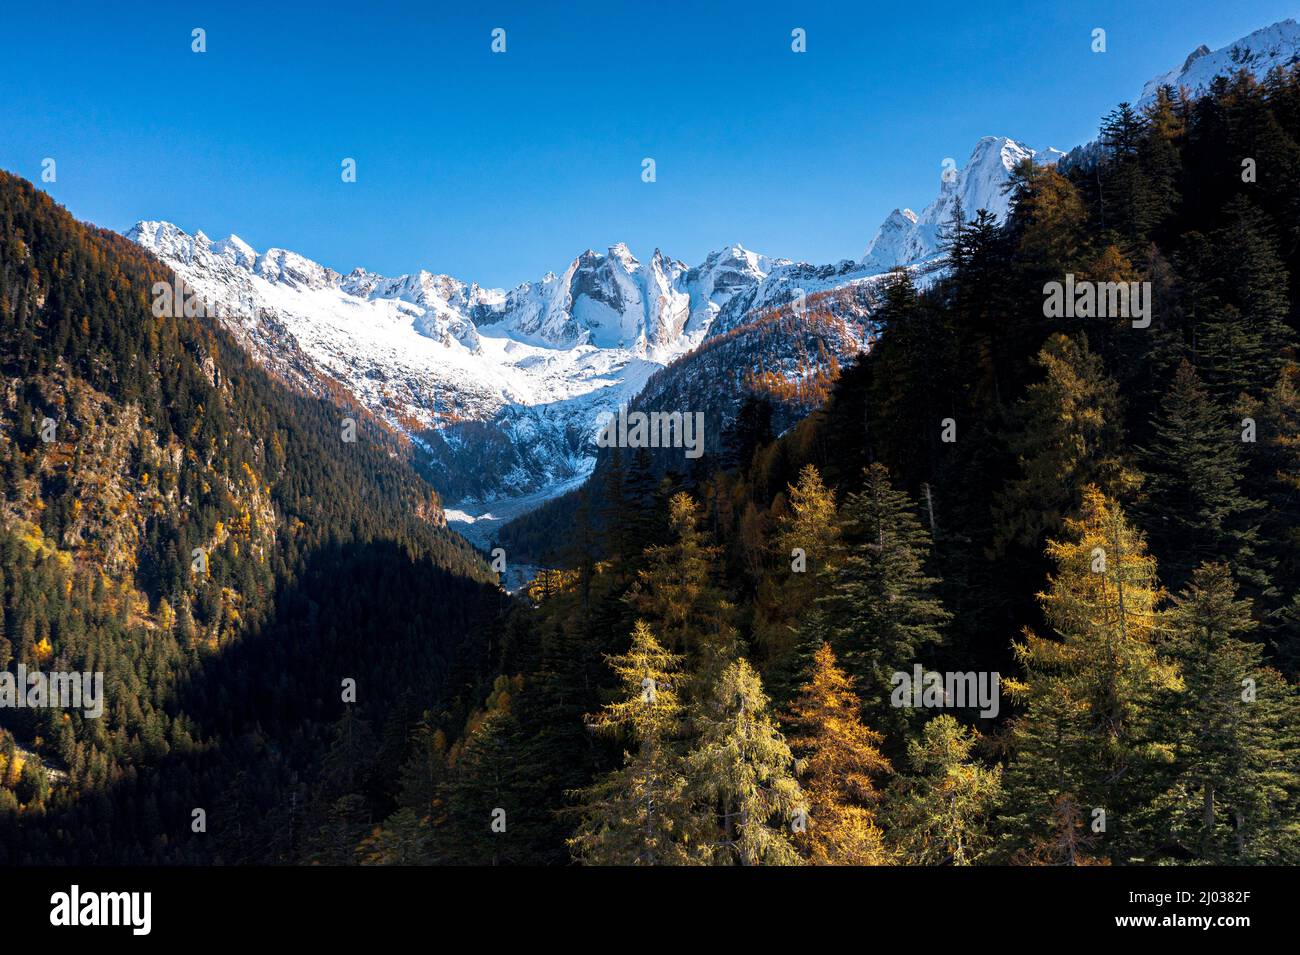 Im Herbst, Val Bregaglia, Graubünden, Schweiz, Europa, wird der Himmel über den schneebedeckten Bergen Sciore und dem Cengalo-Gipfel von Wäldern umrahmt Stockfoto